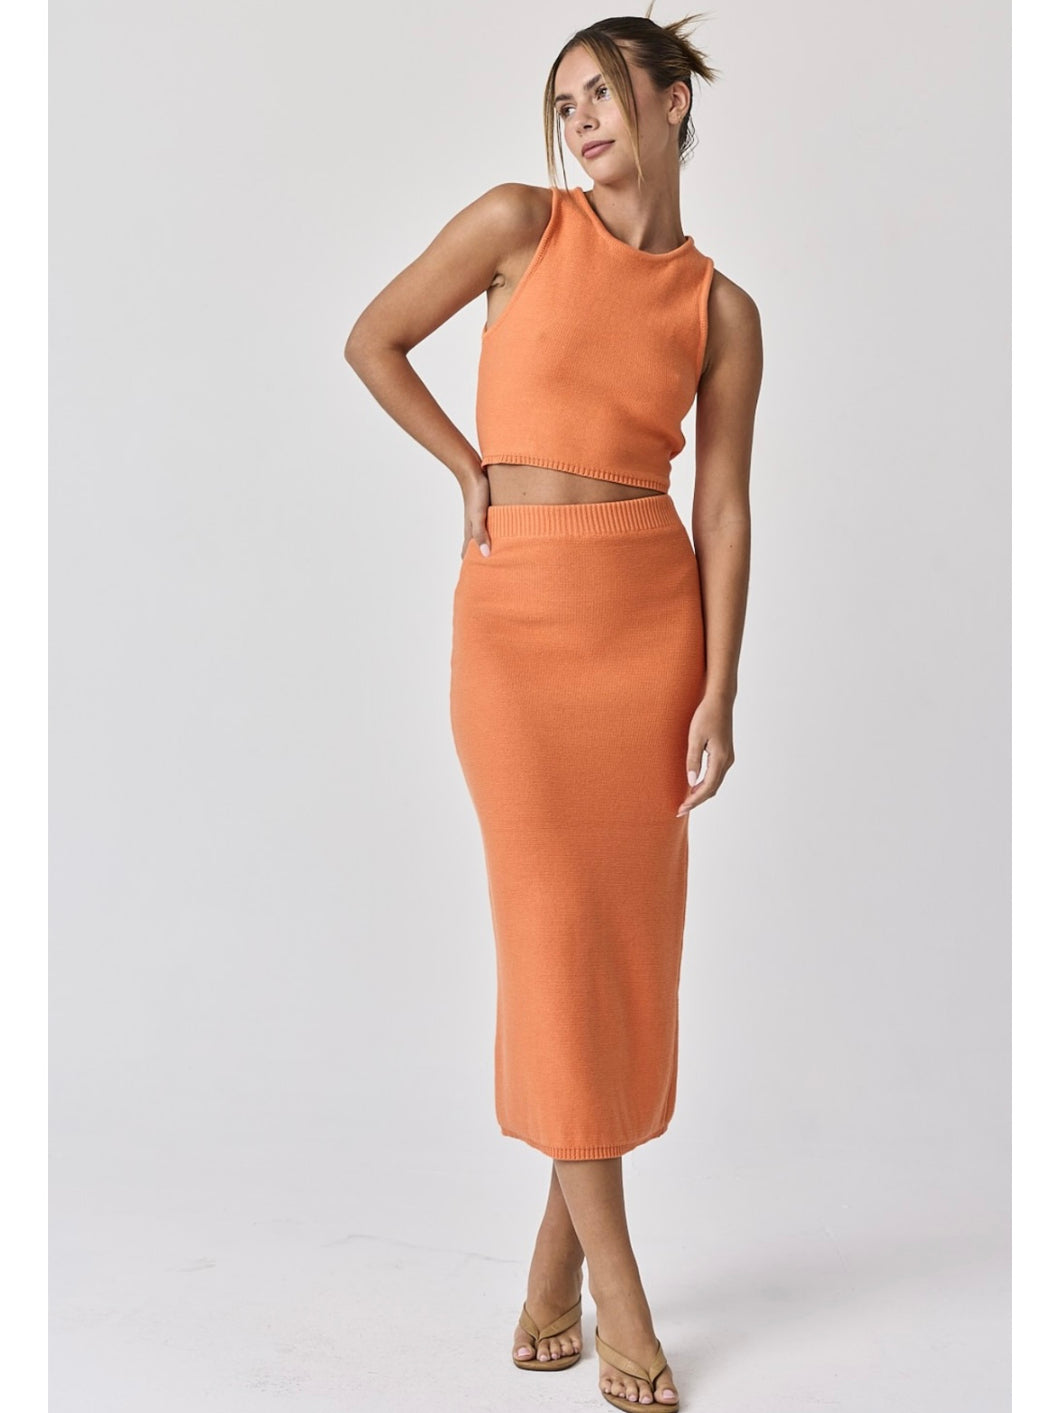 Orange Lara Knit Top & Skirt Set